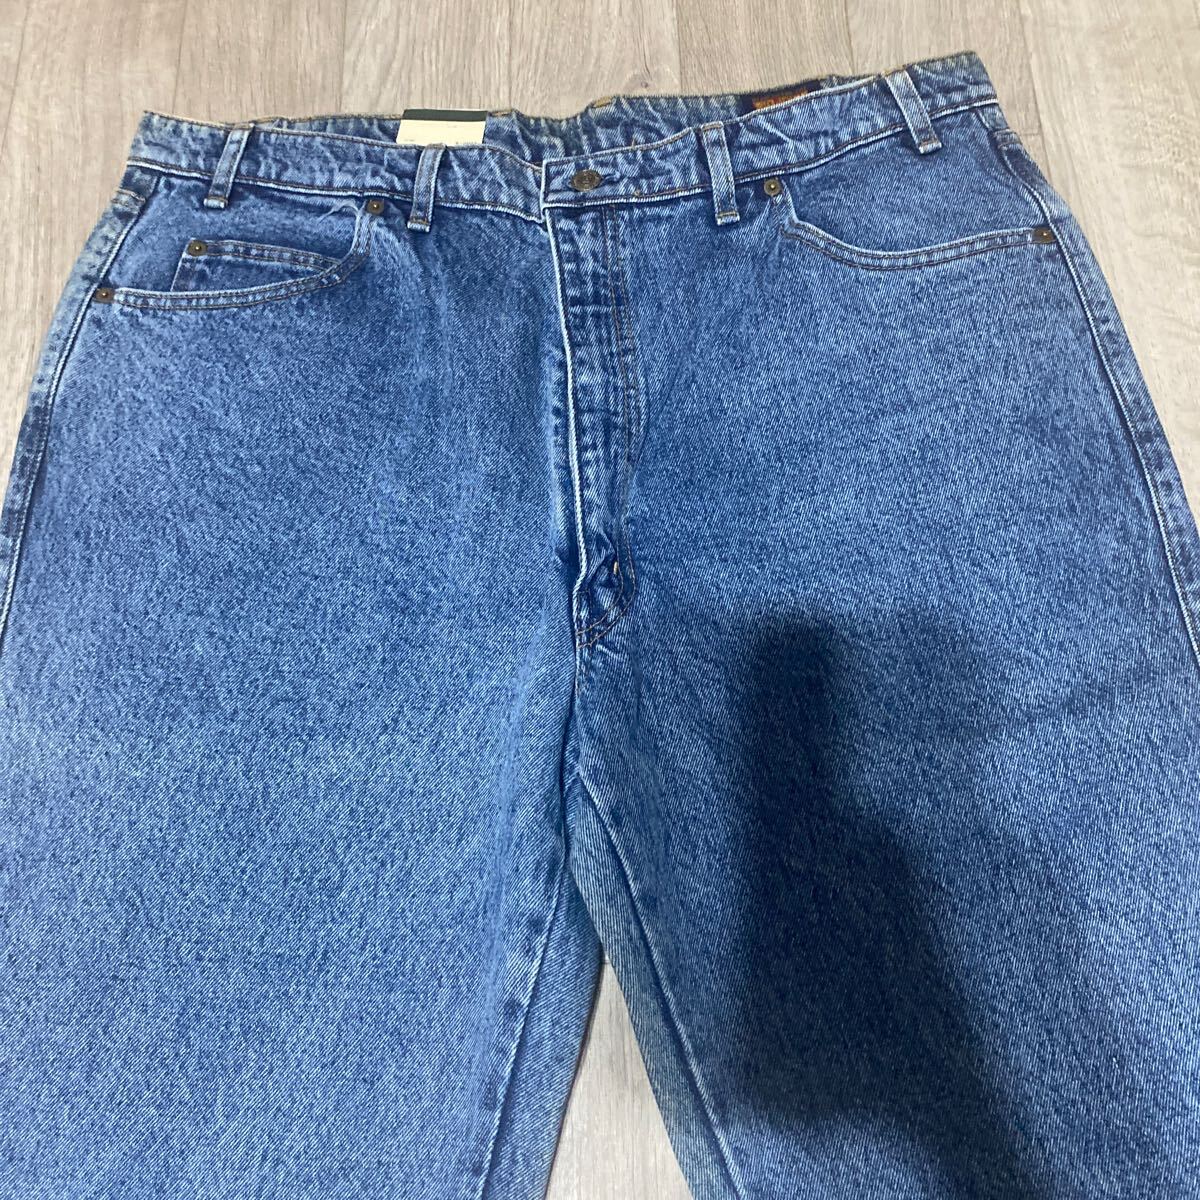  бесплатная доставка подлинная вещь не использовался джинсы гарантия - имеется [BIG JHON 303 W42]3L размер 